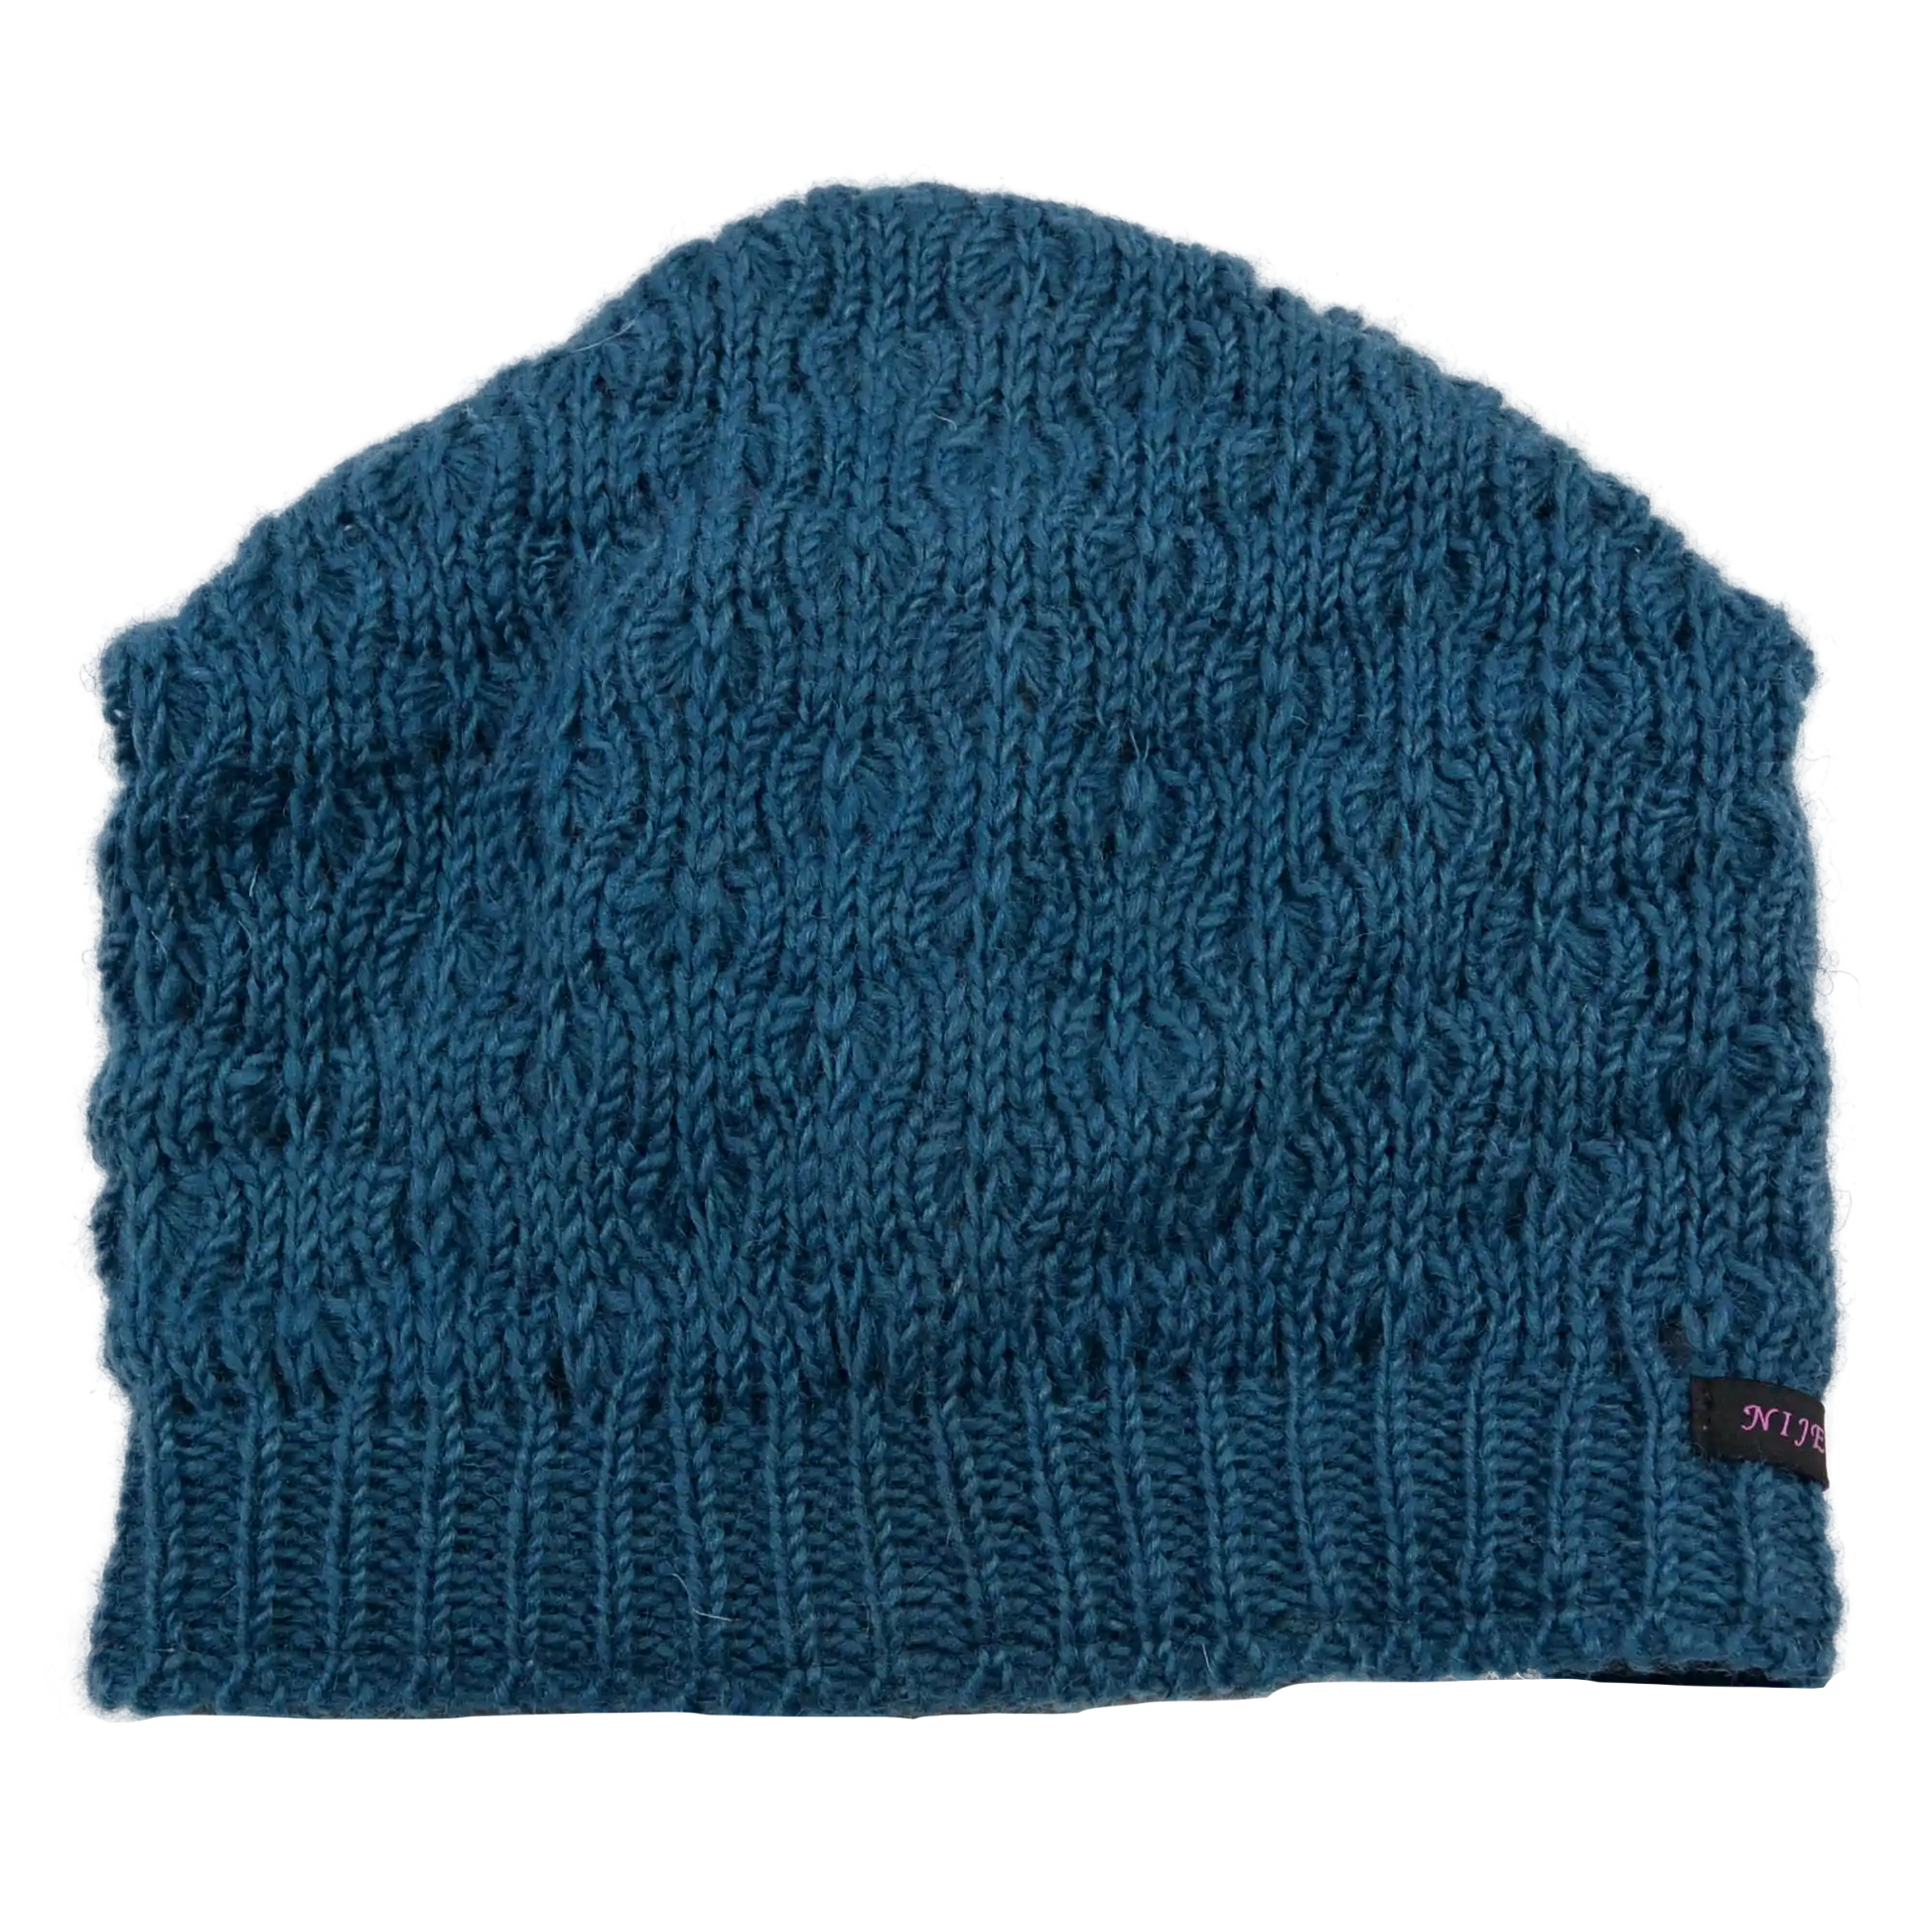 Long Beanie Mütze aus Schurwolle Hellblau mit Strickmuster.